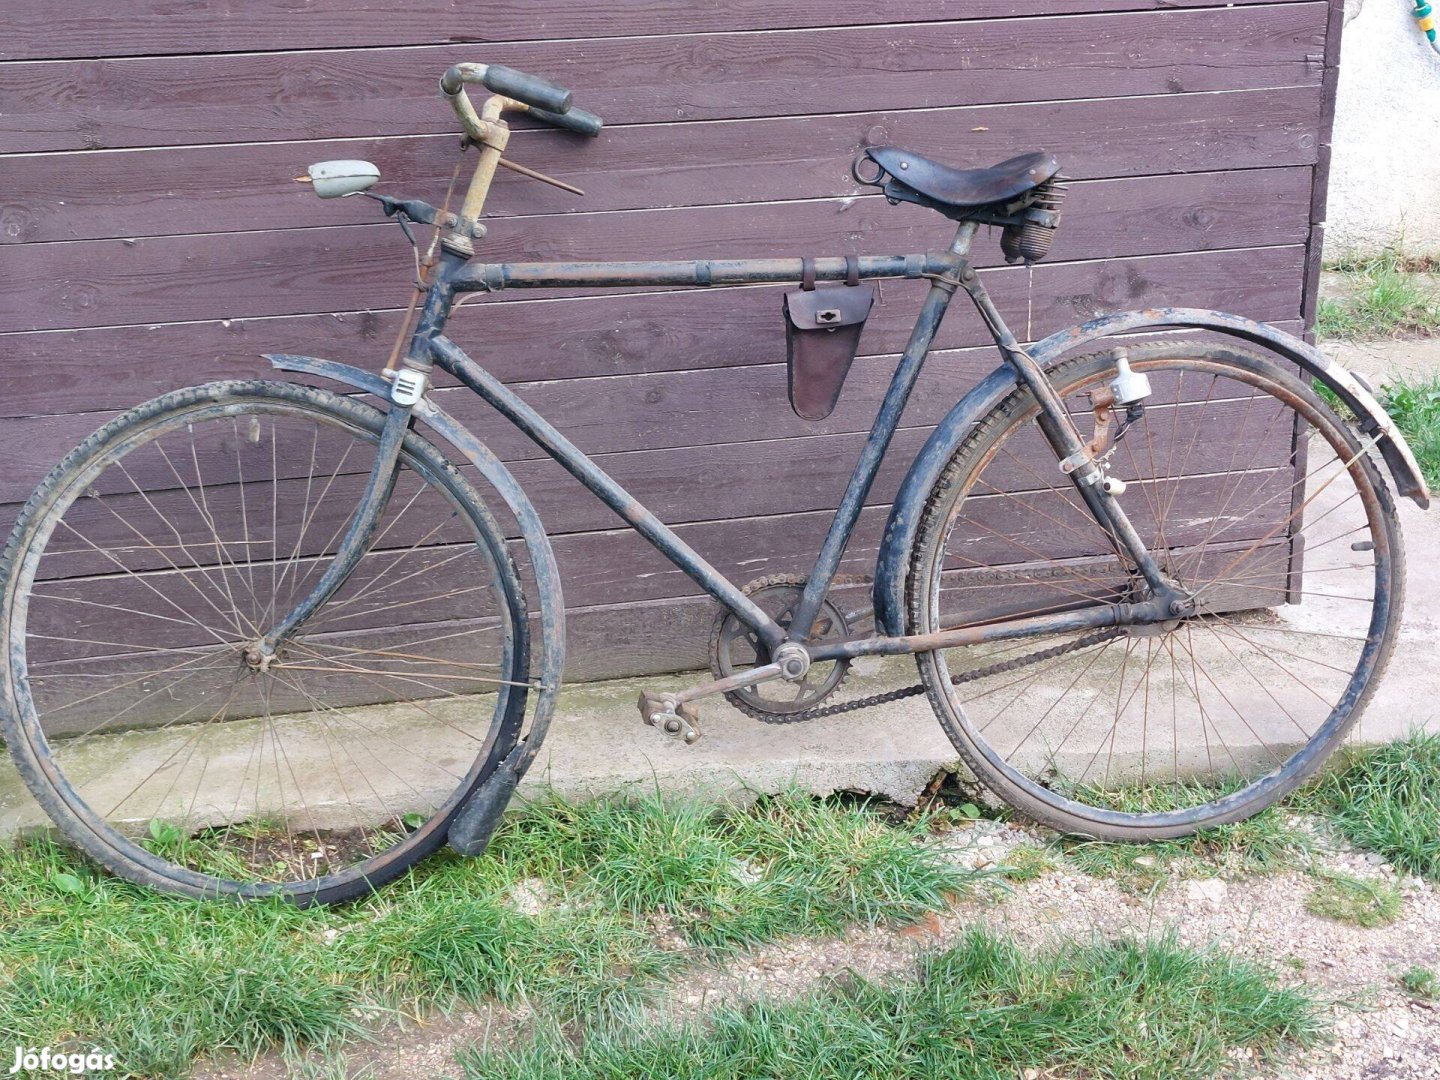 Kerékpár "Régi" 1950-160 évekből. Eredeti tartozékok